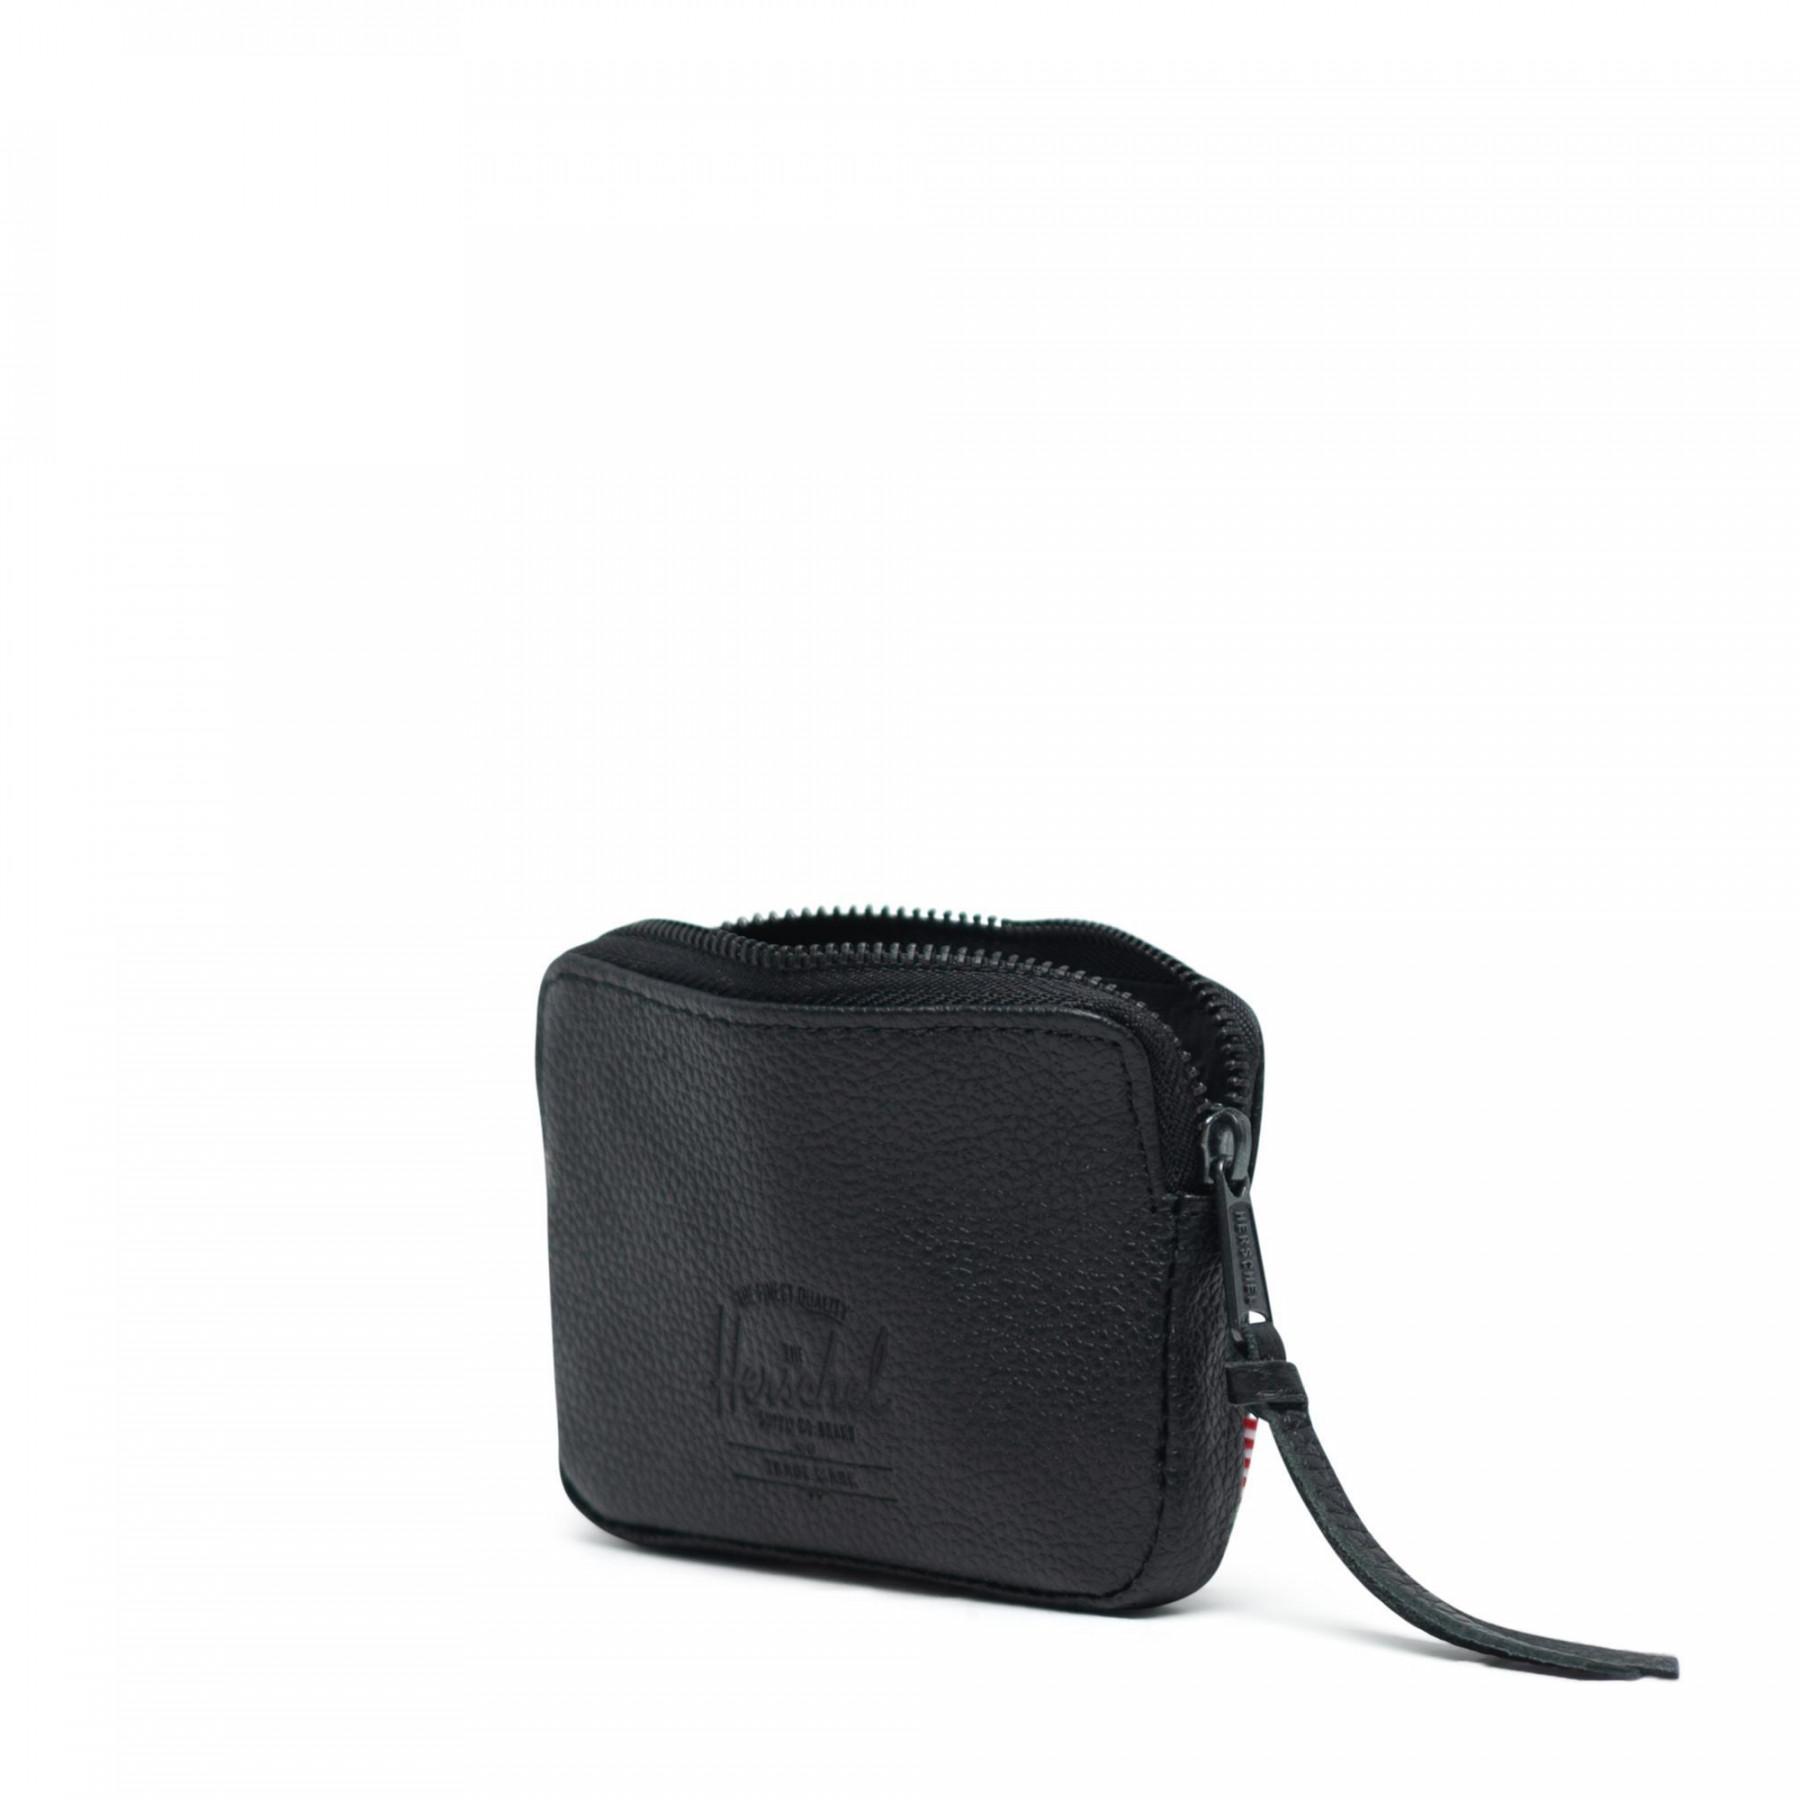 Portfolio Herschel oxford pouch leather